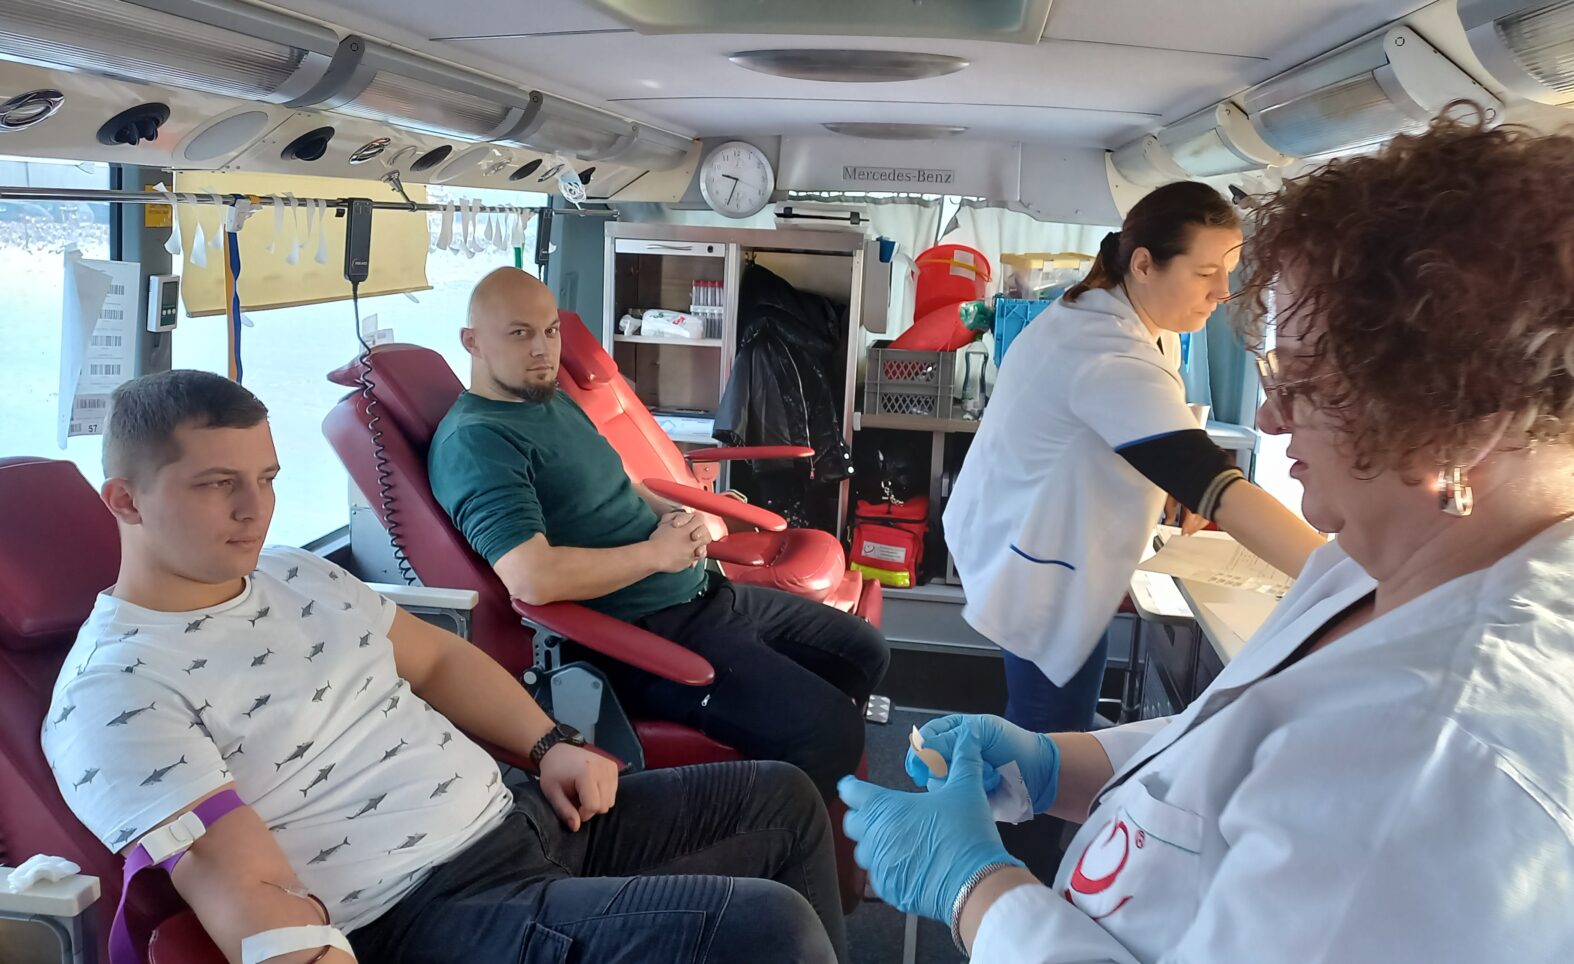 LIBERTY Częstochowa gives blood to community